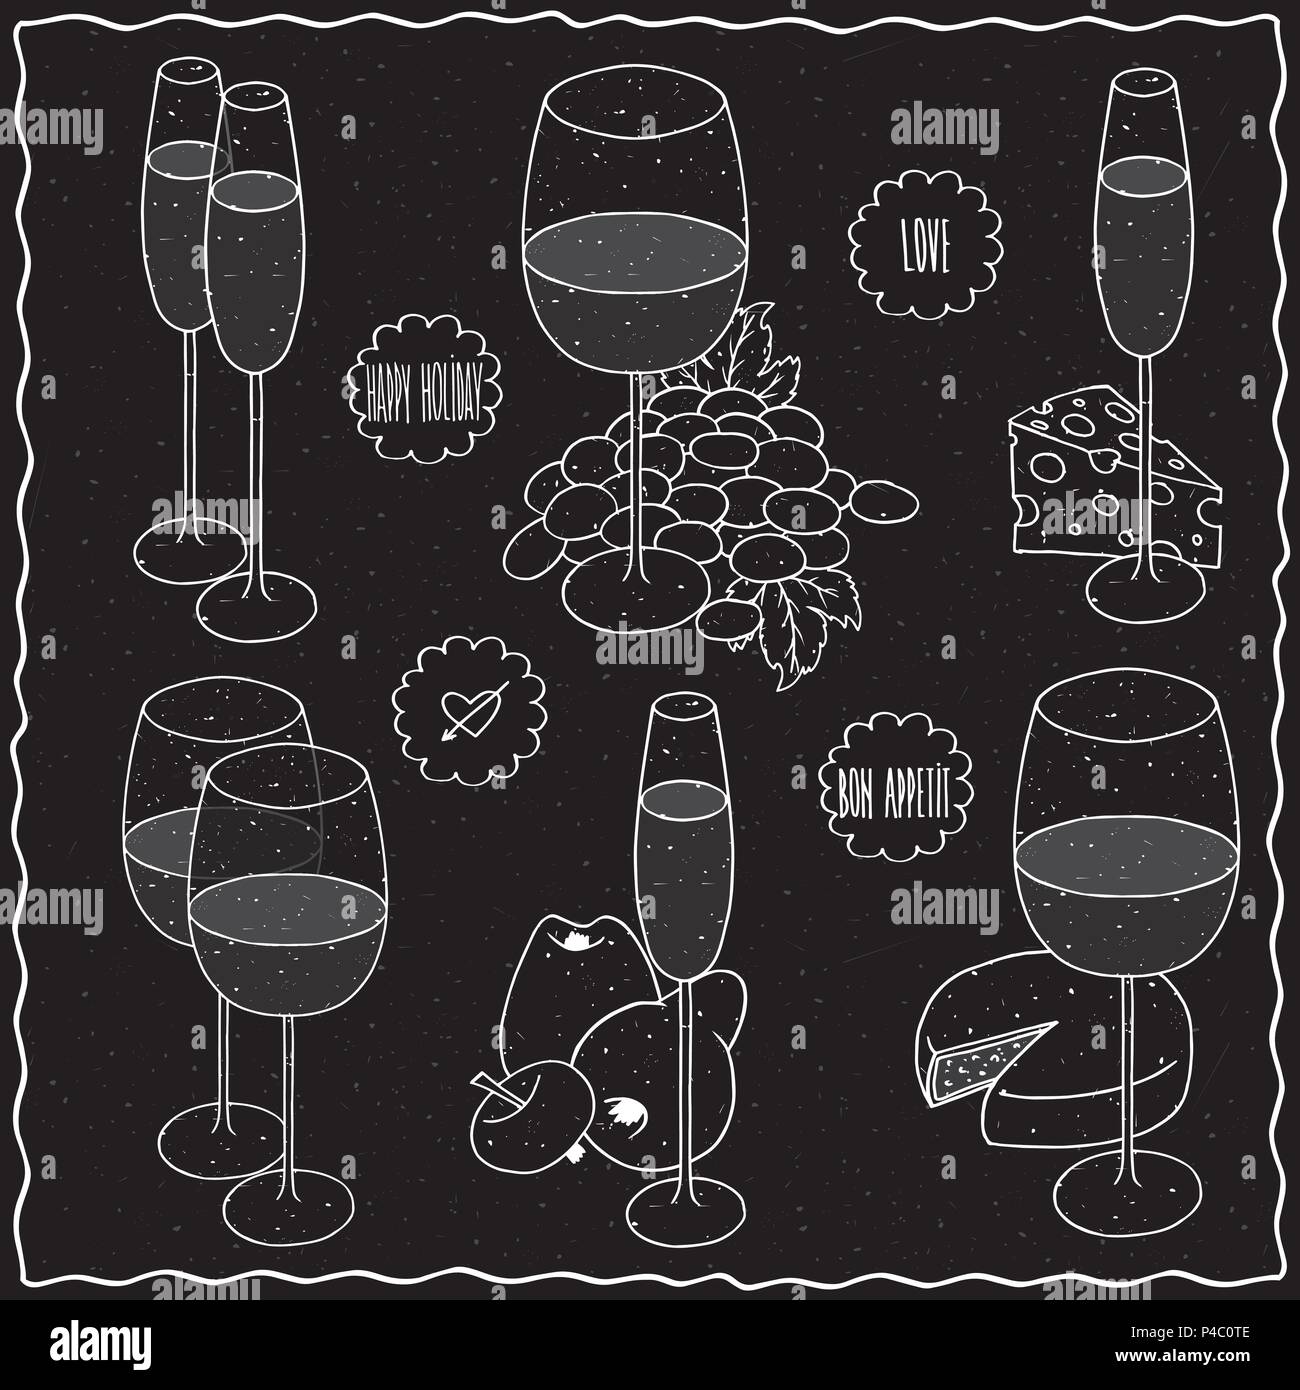 Impostare clip art di vita ancora disegnati a mano con un gessetto sulla lavagna nera. Bicchieri diversi tipi di vino e champagne accanto alla frutta e formaggi. Etichette con Illustrazione Vettoriale